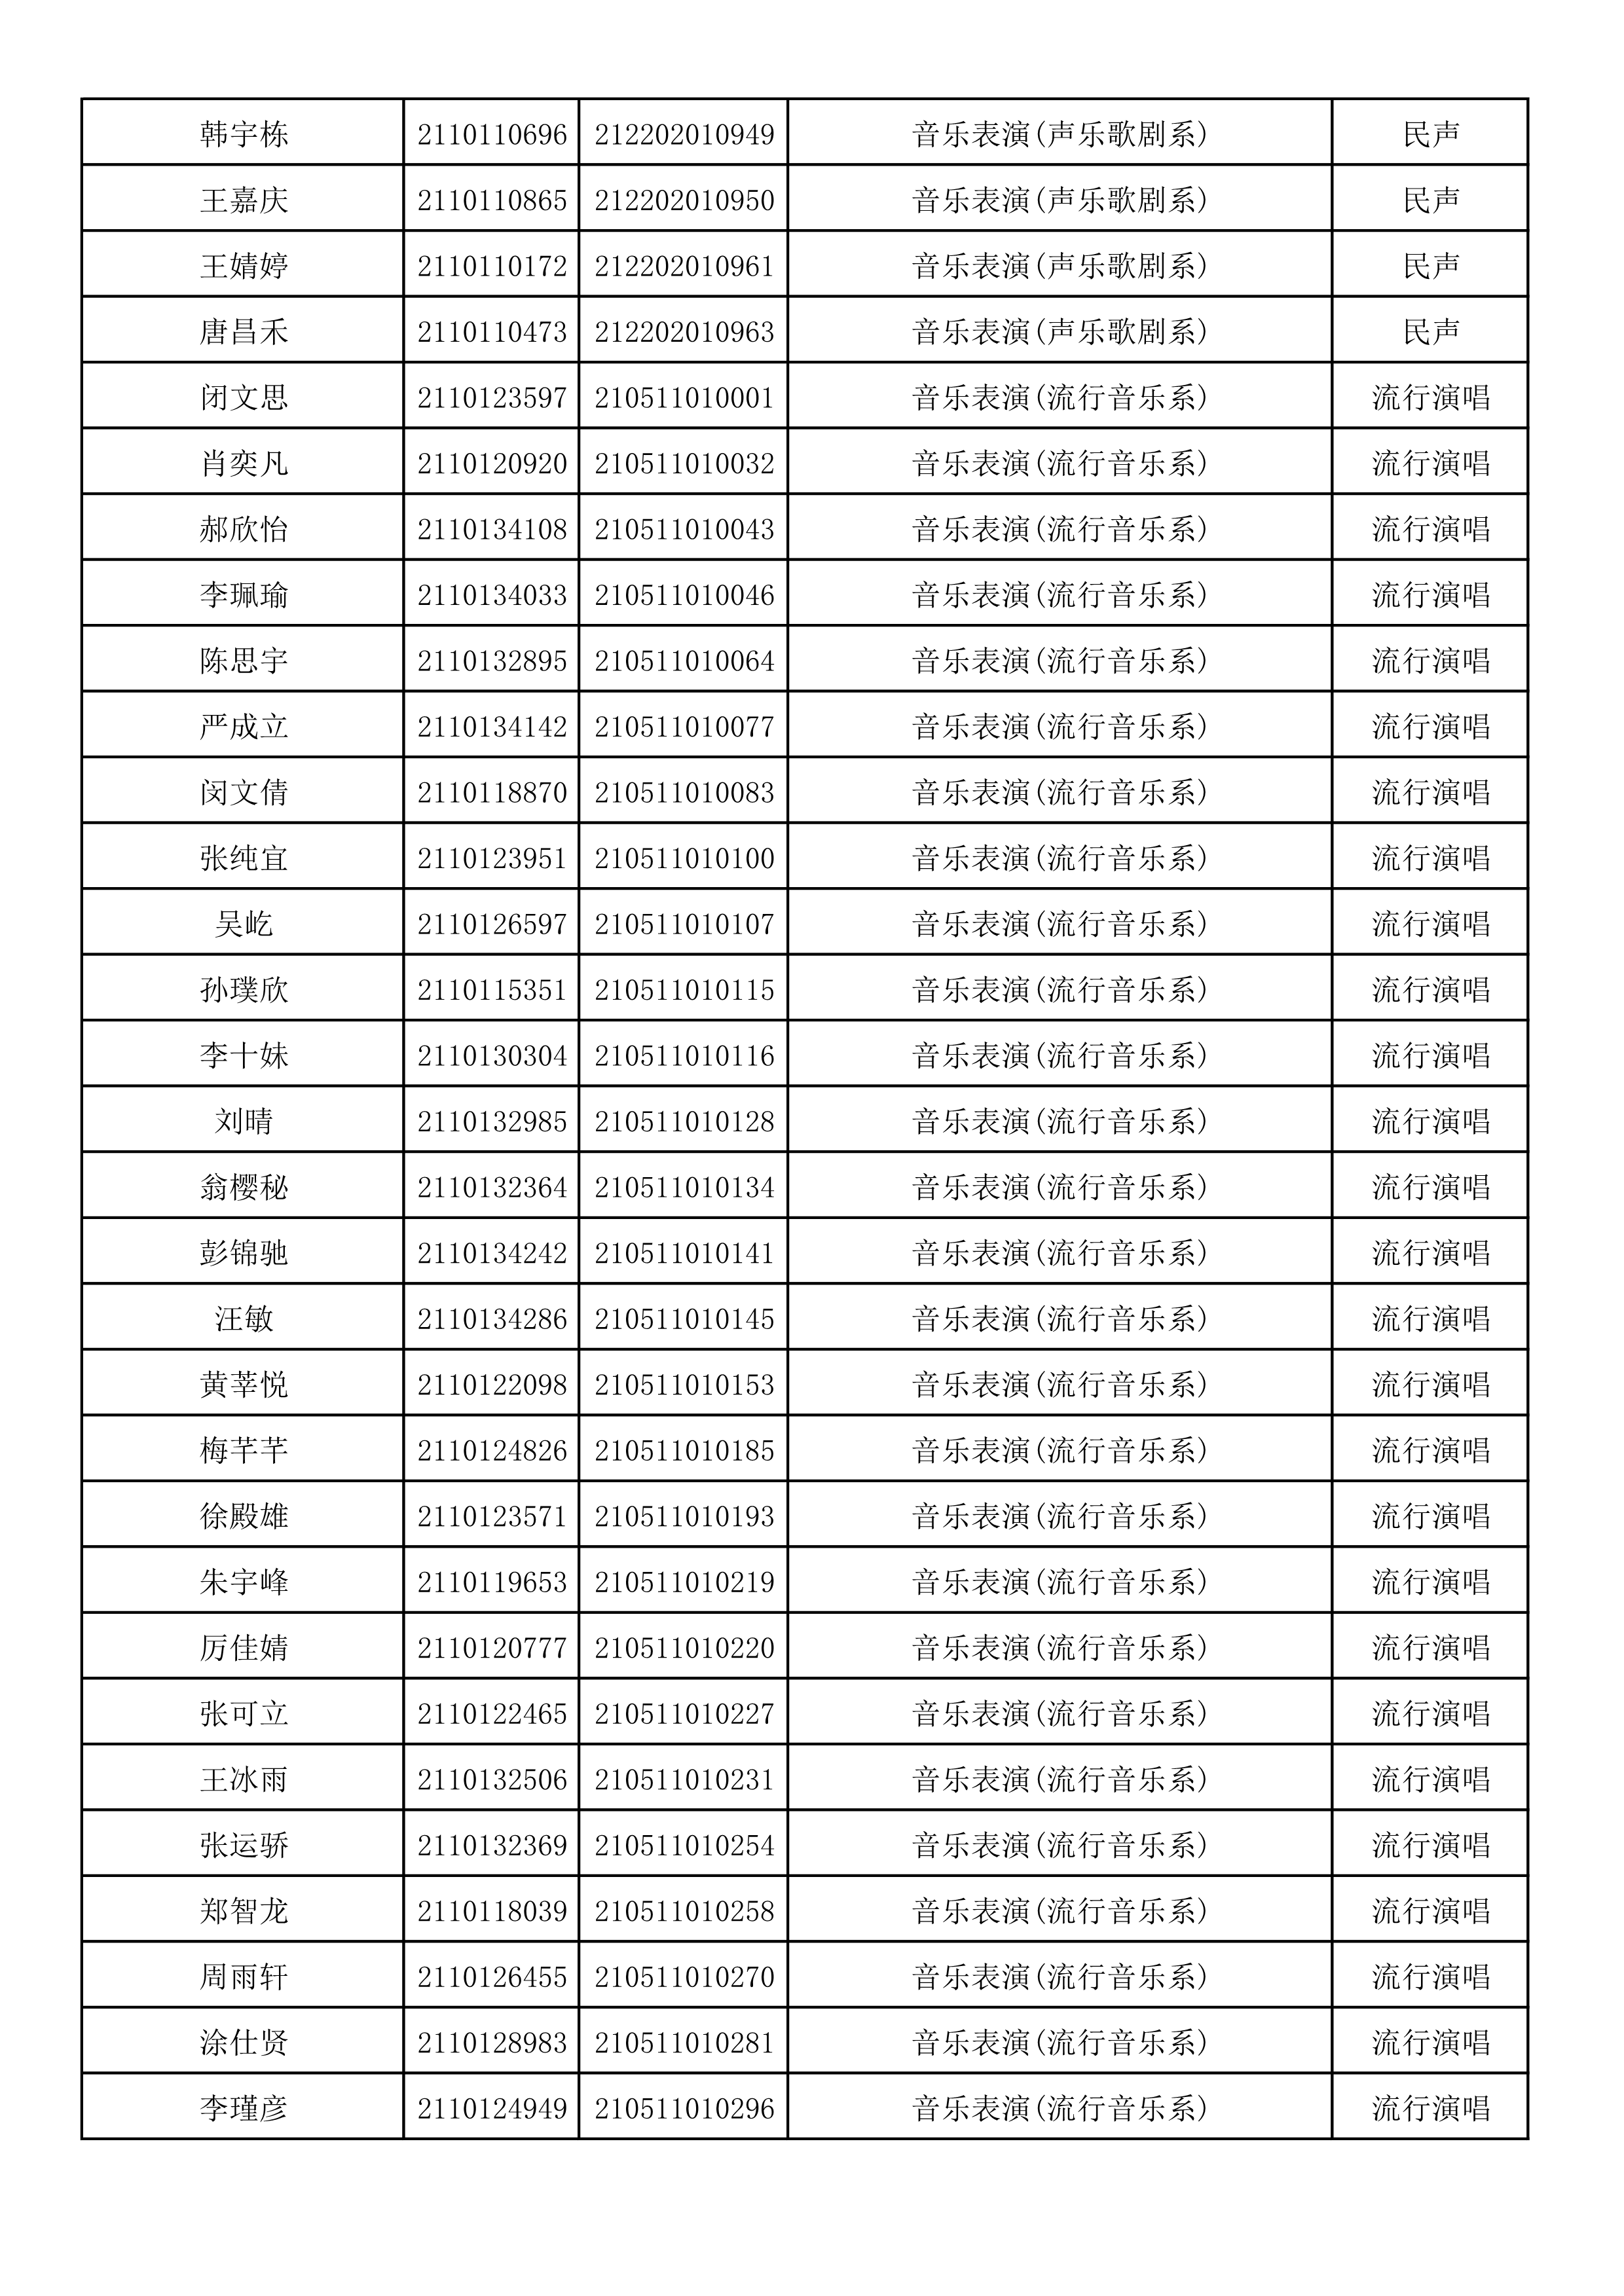 附件2：浙江音乐学院2021年本科招生专业校考初试合格考生名单_34.png